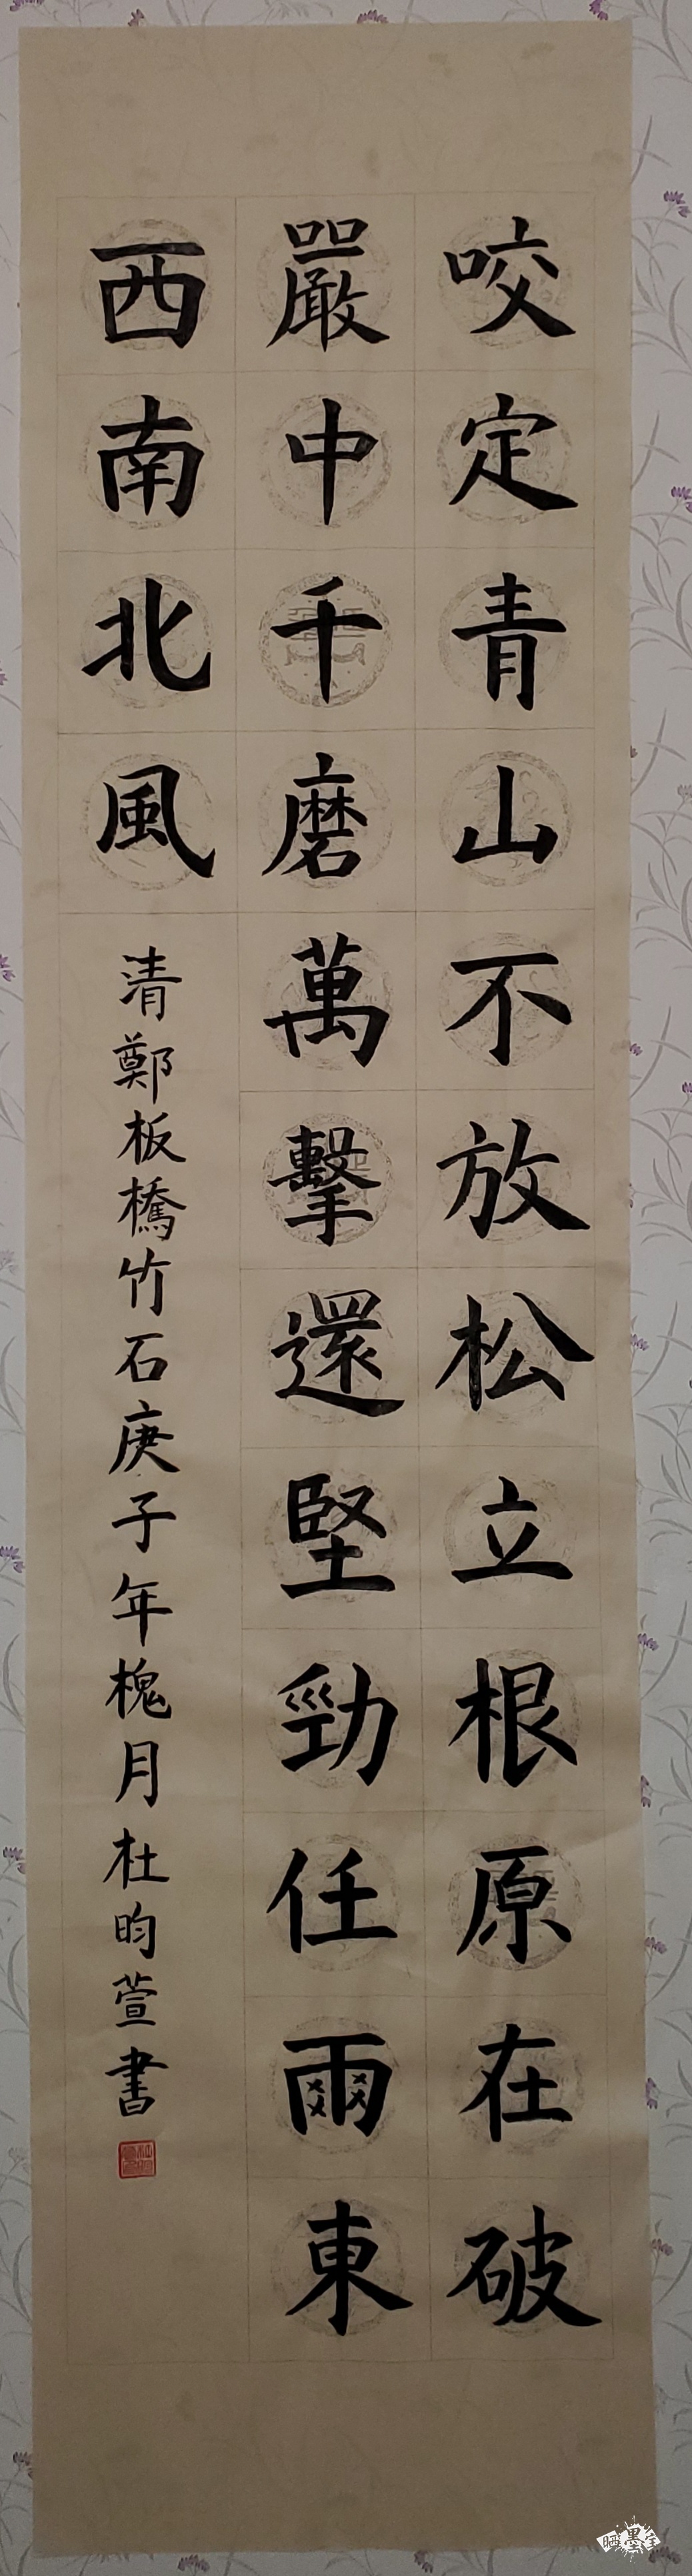 竹石书法作品软笔图片